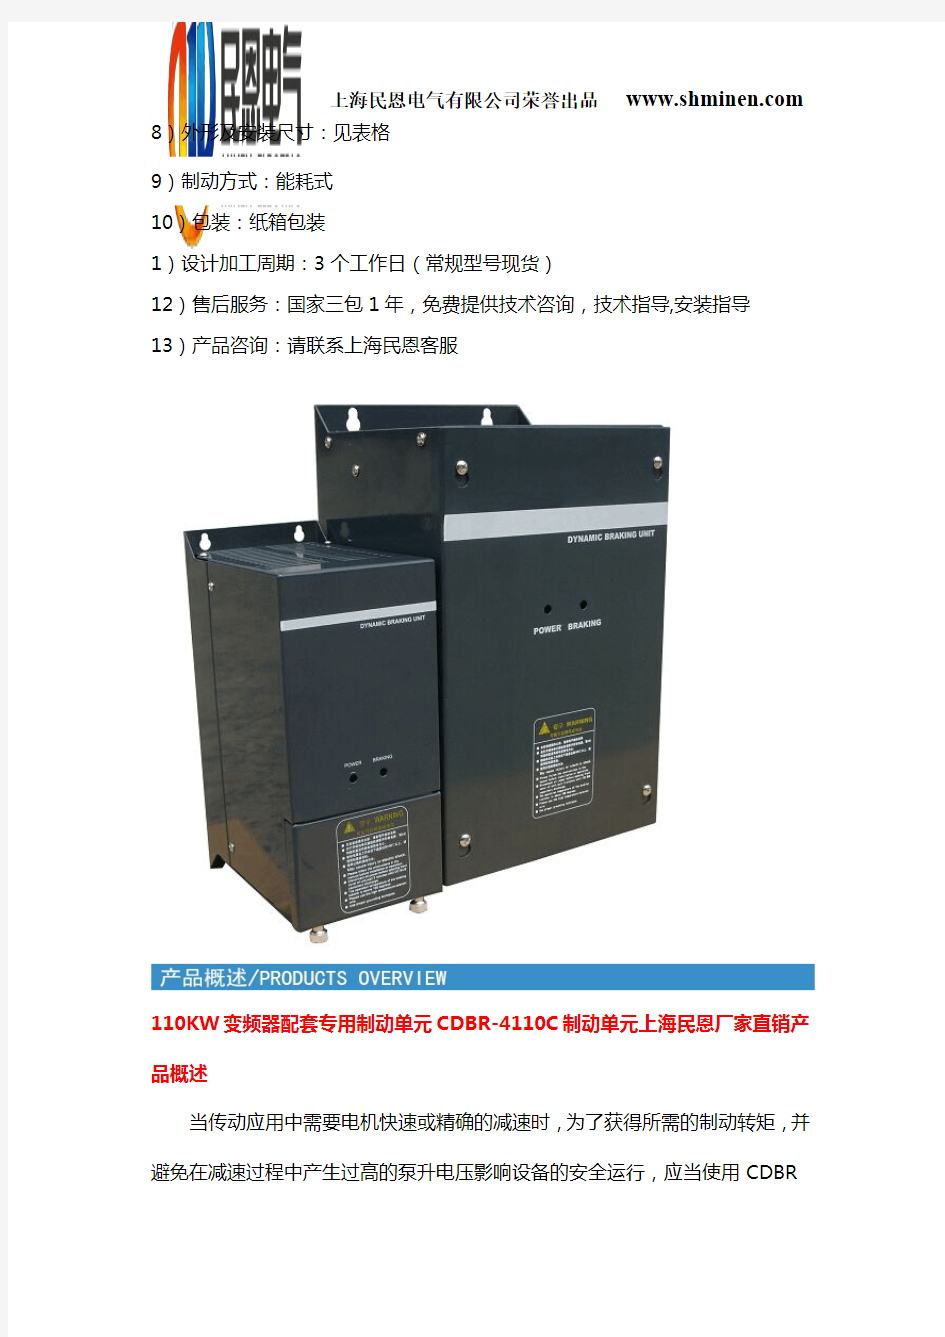 110KW变频器配套专用制动单元CDBR-4110C制动单元上海民恩厂家直销